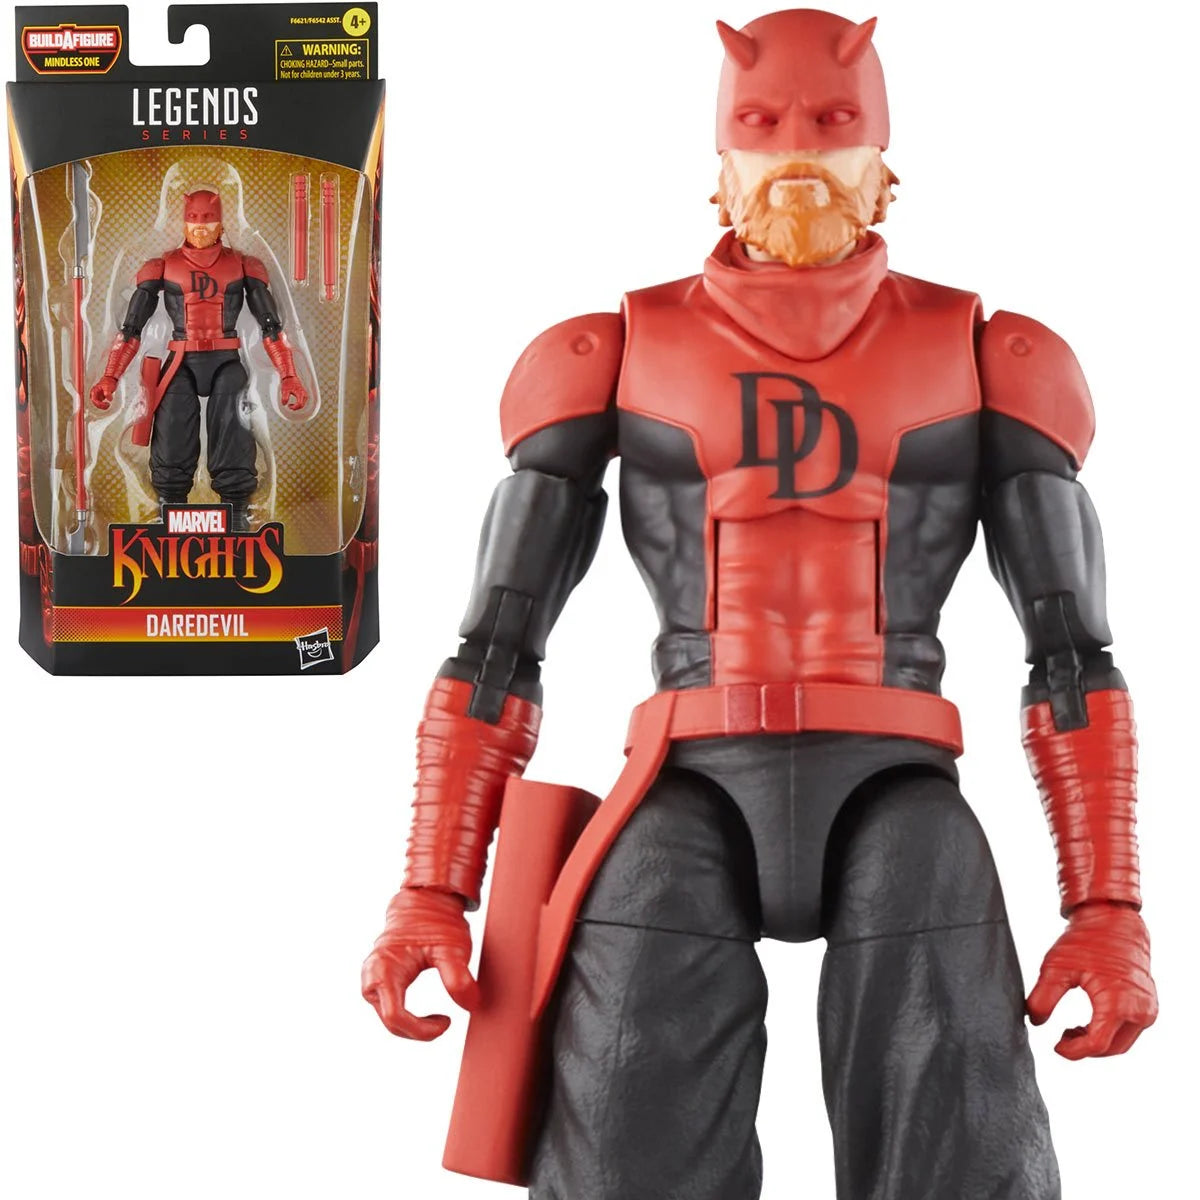 Marvel Legends - Marvel Knights: Daredevil 6-Inch Action Figure